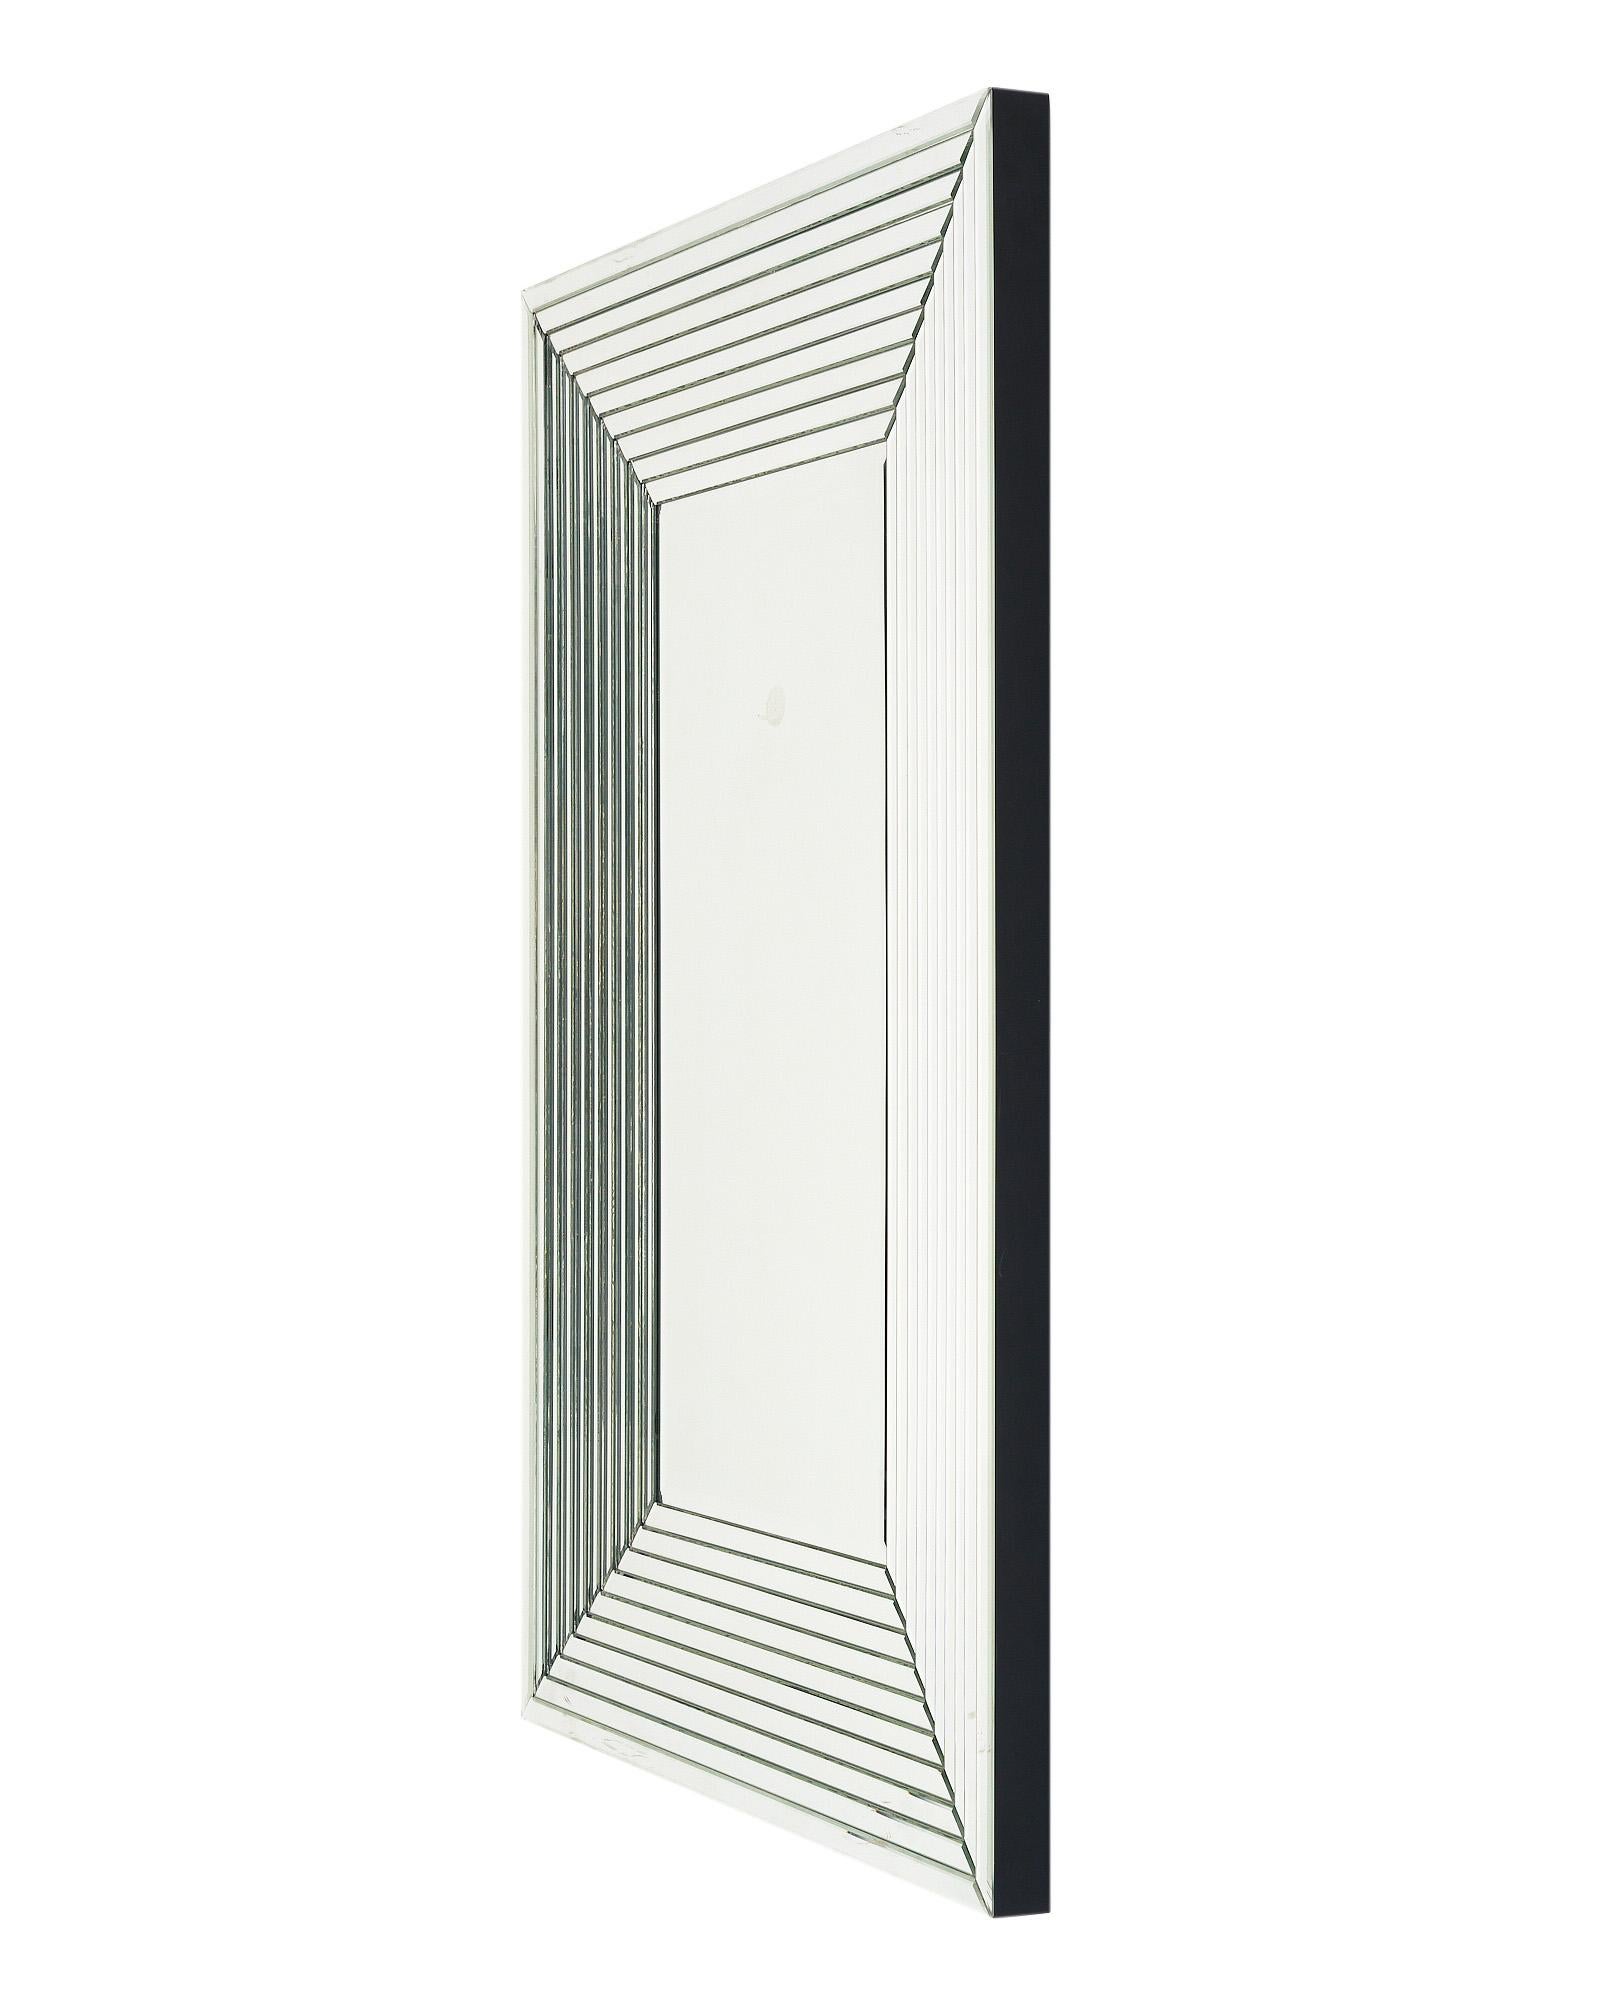 Großer Spiegel aus Frankreich im Stil des Art déco. Dieses Stück hat eine Holzstruktur mit geschichteten Spiegeln, die einen Deco-Rahmen für den zentralen abgeschrägten Spiegel bilden. Sie kann vertikal oder horizontal aufgehängt werden und hat eine